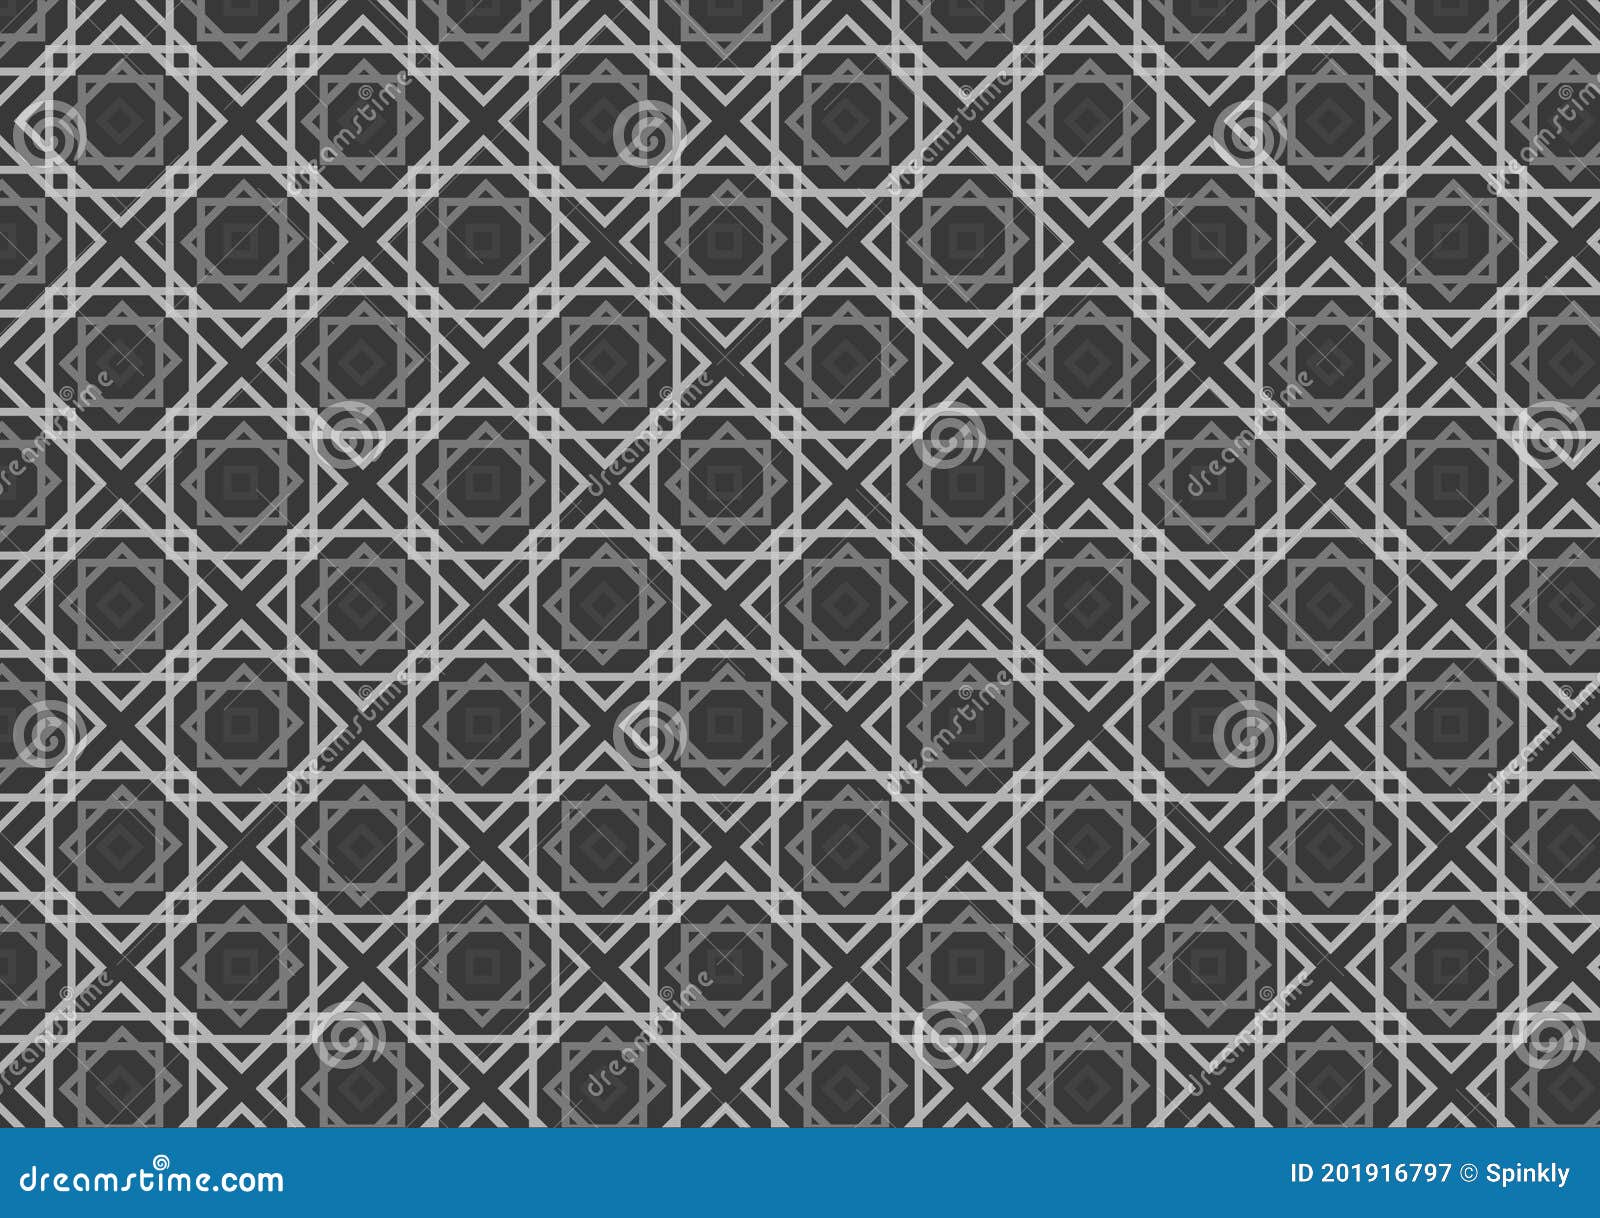 Grey Textured Pattern Background Design   Grey Textured Pattern Background Design   Use Design 201916797 